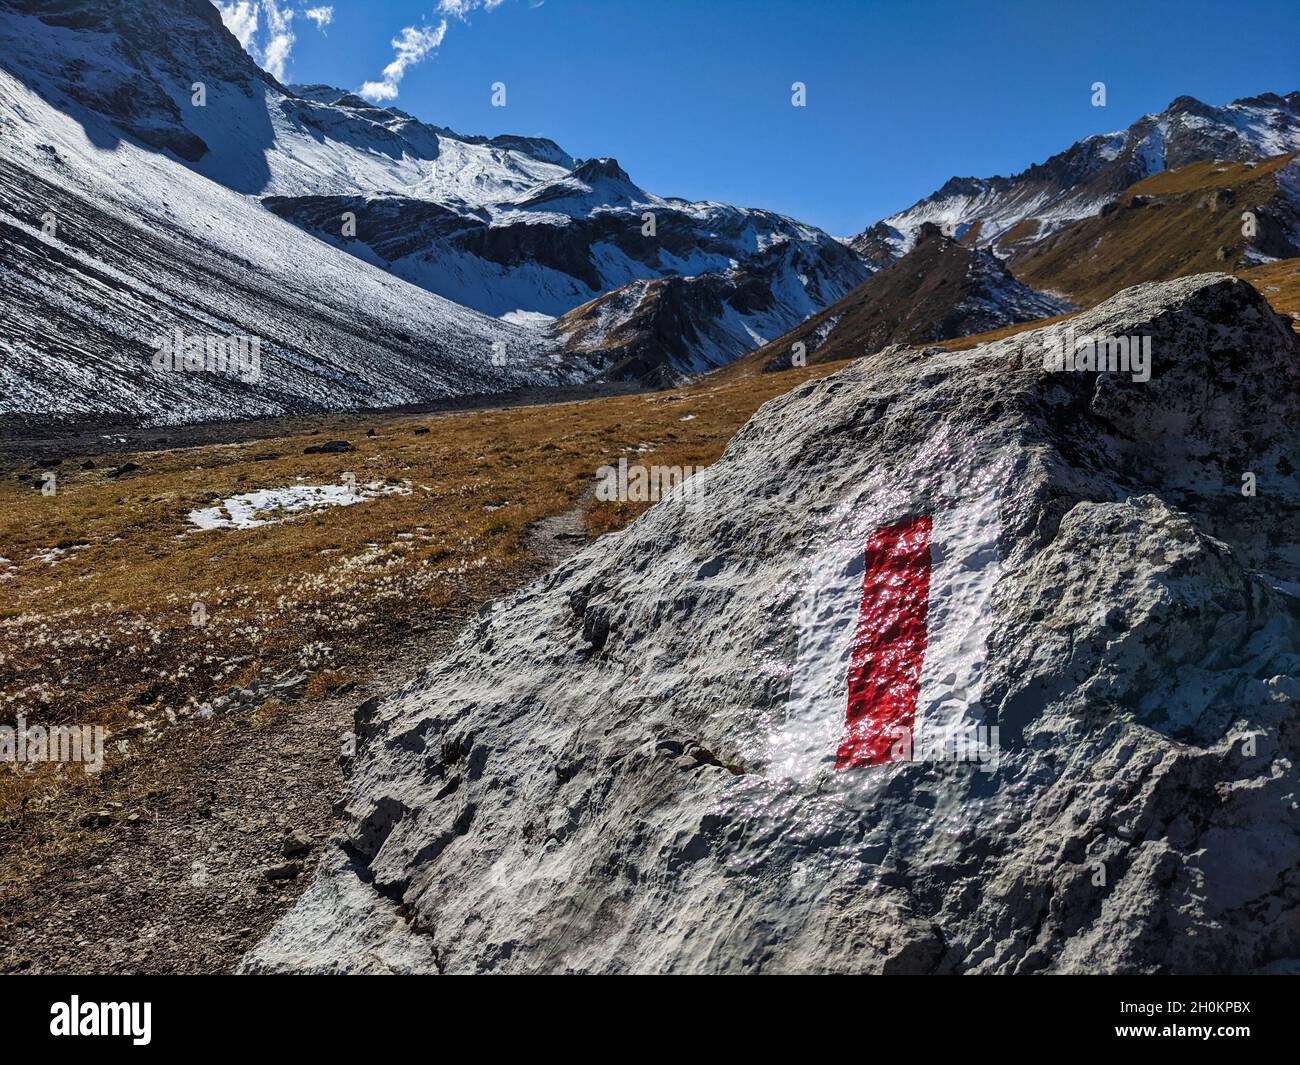 Bergwanderweg.Wanderwege zeigen sich in den Bergen von graubünden bei davos klosters rot und weiß. Wandern in der Natur Stockfoto